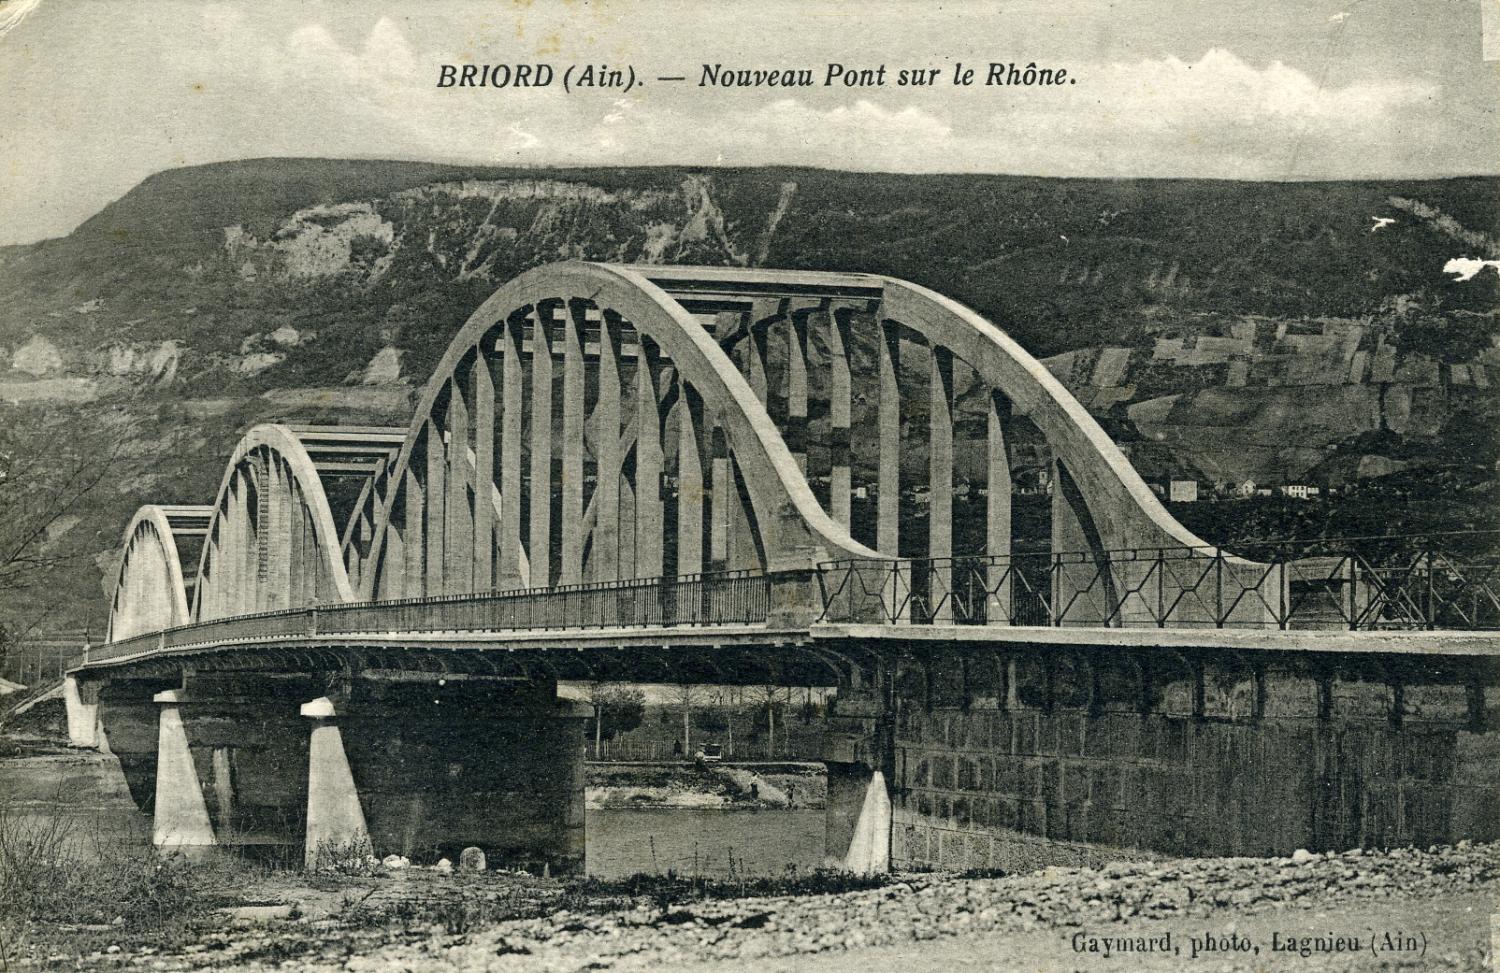 Briord (Ain). - Nouveau Pont sur le Rhône.